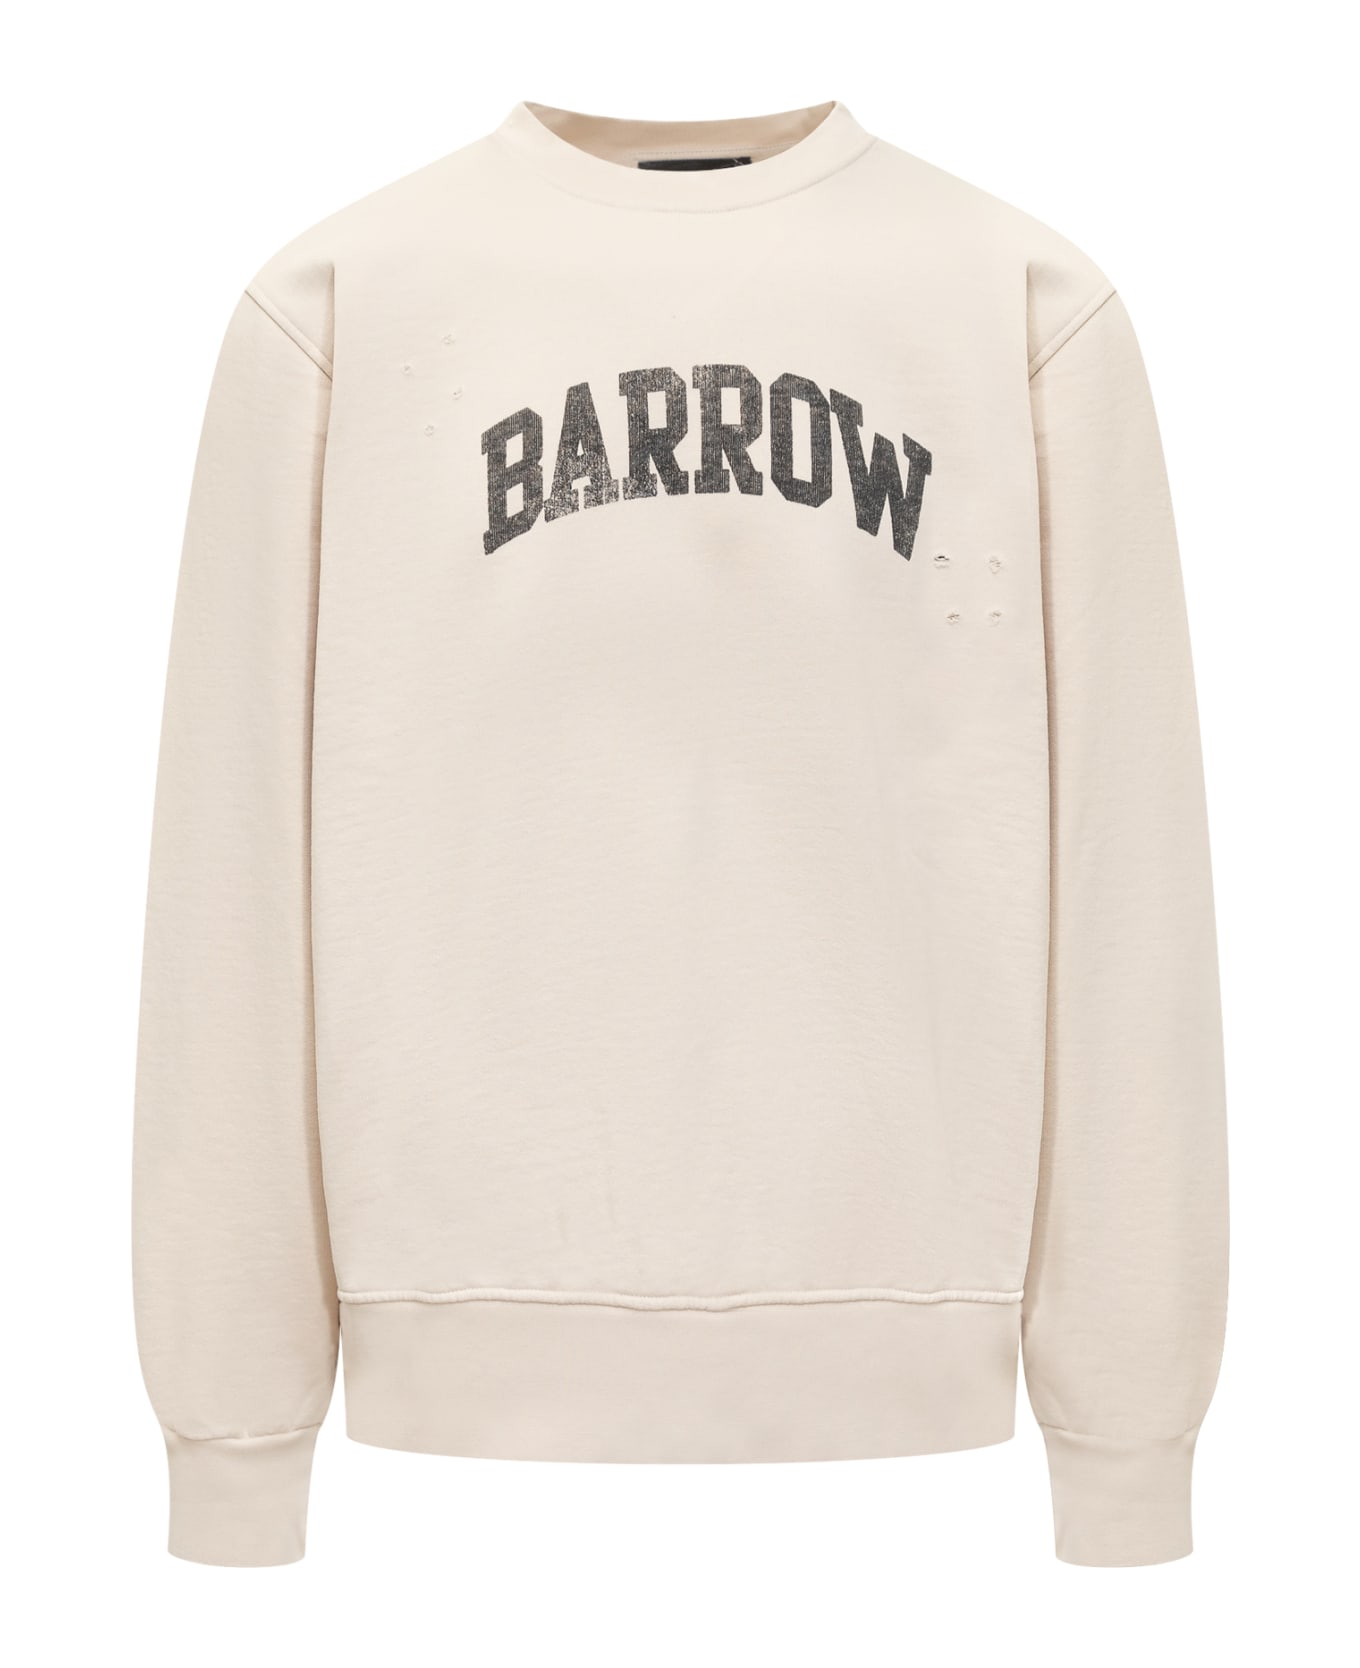 Barrow Sweatshirt - TURTLEDOVE